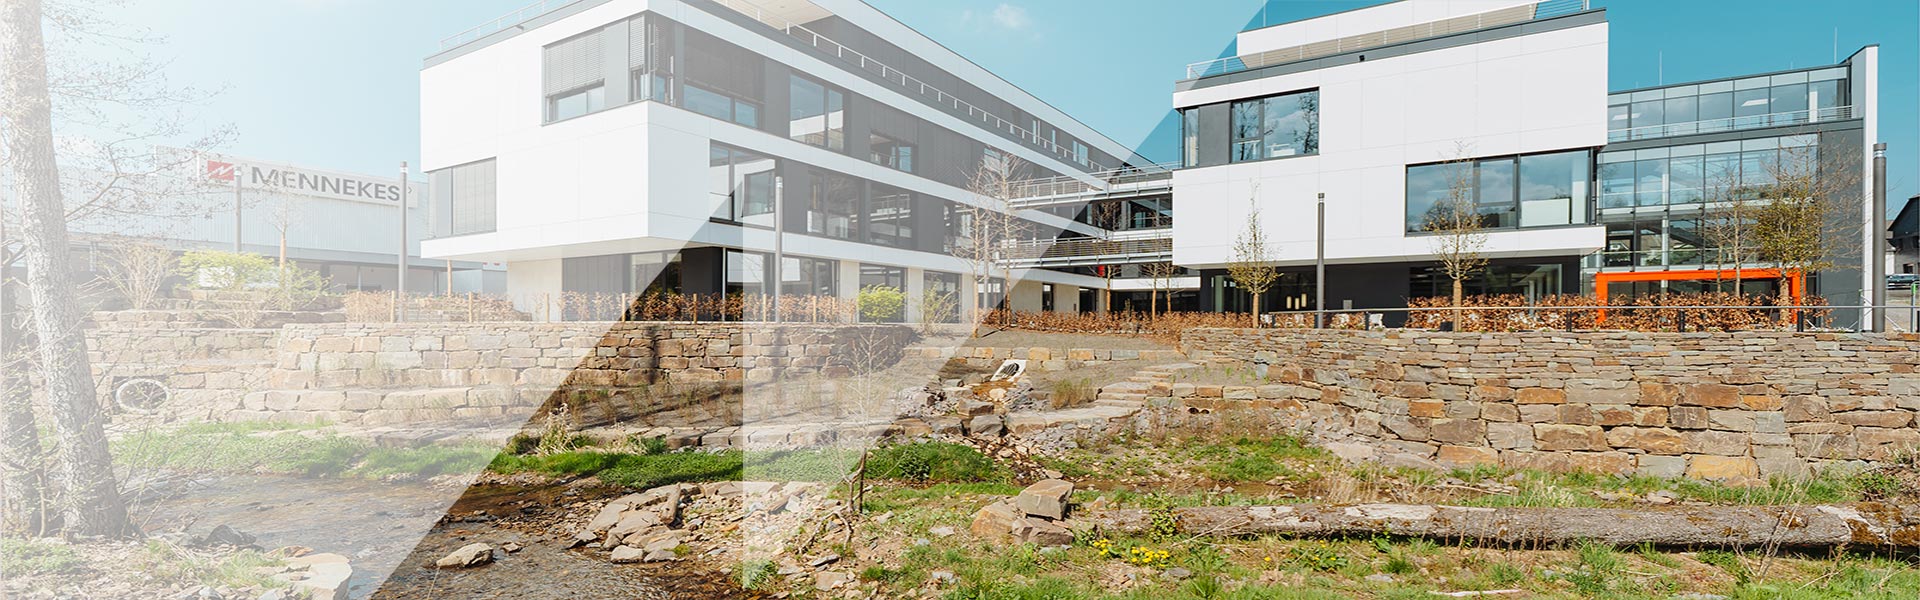 Eine Aufnahme eines Bachlaufs mit den MENNEKES Verwaltungsgebäuden im Hintergrund